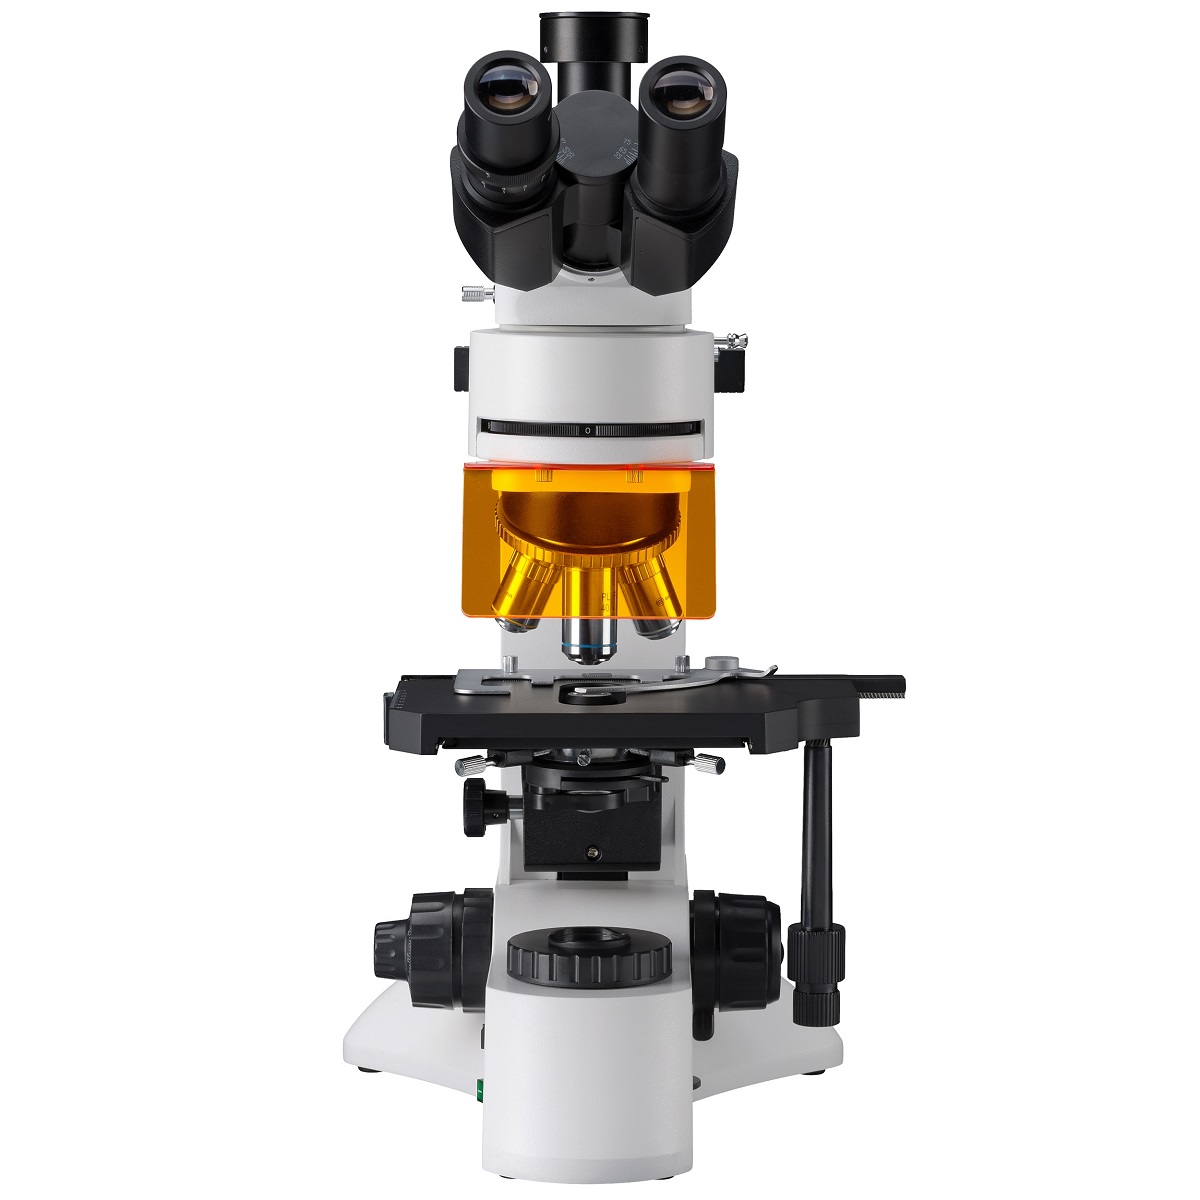 میکروسکوپ سه چشمی آزمایشگاهی، تحقیقاتی با نور فلوروسنت مدل L-3201